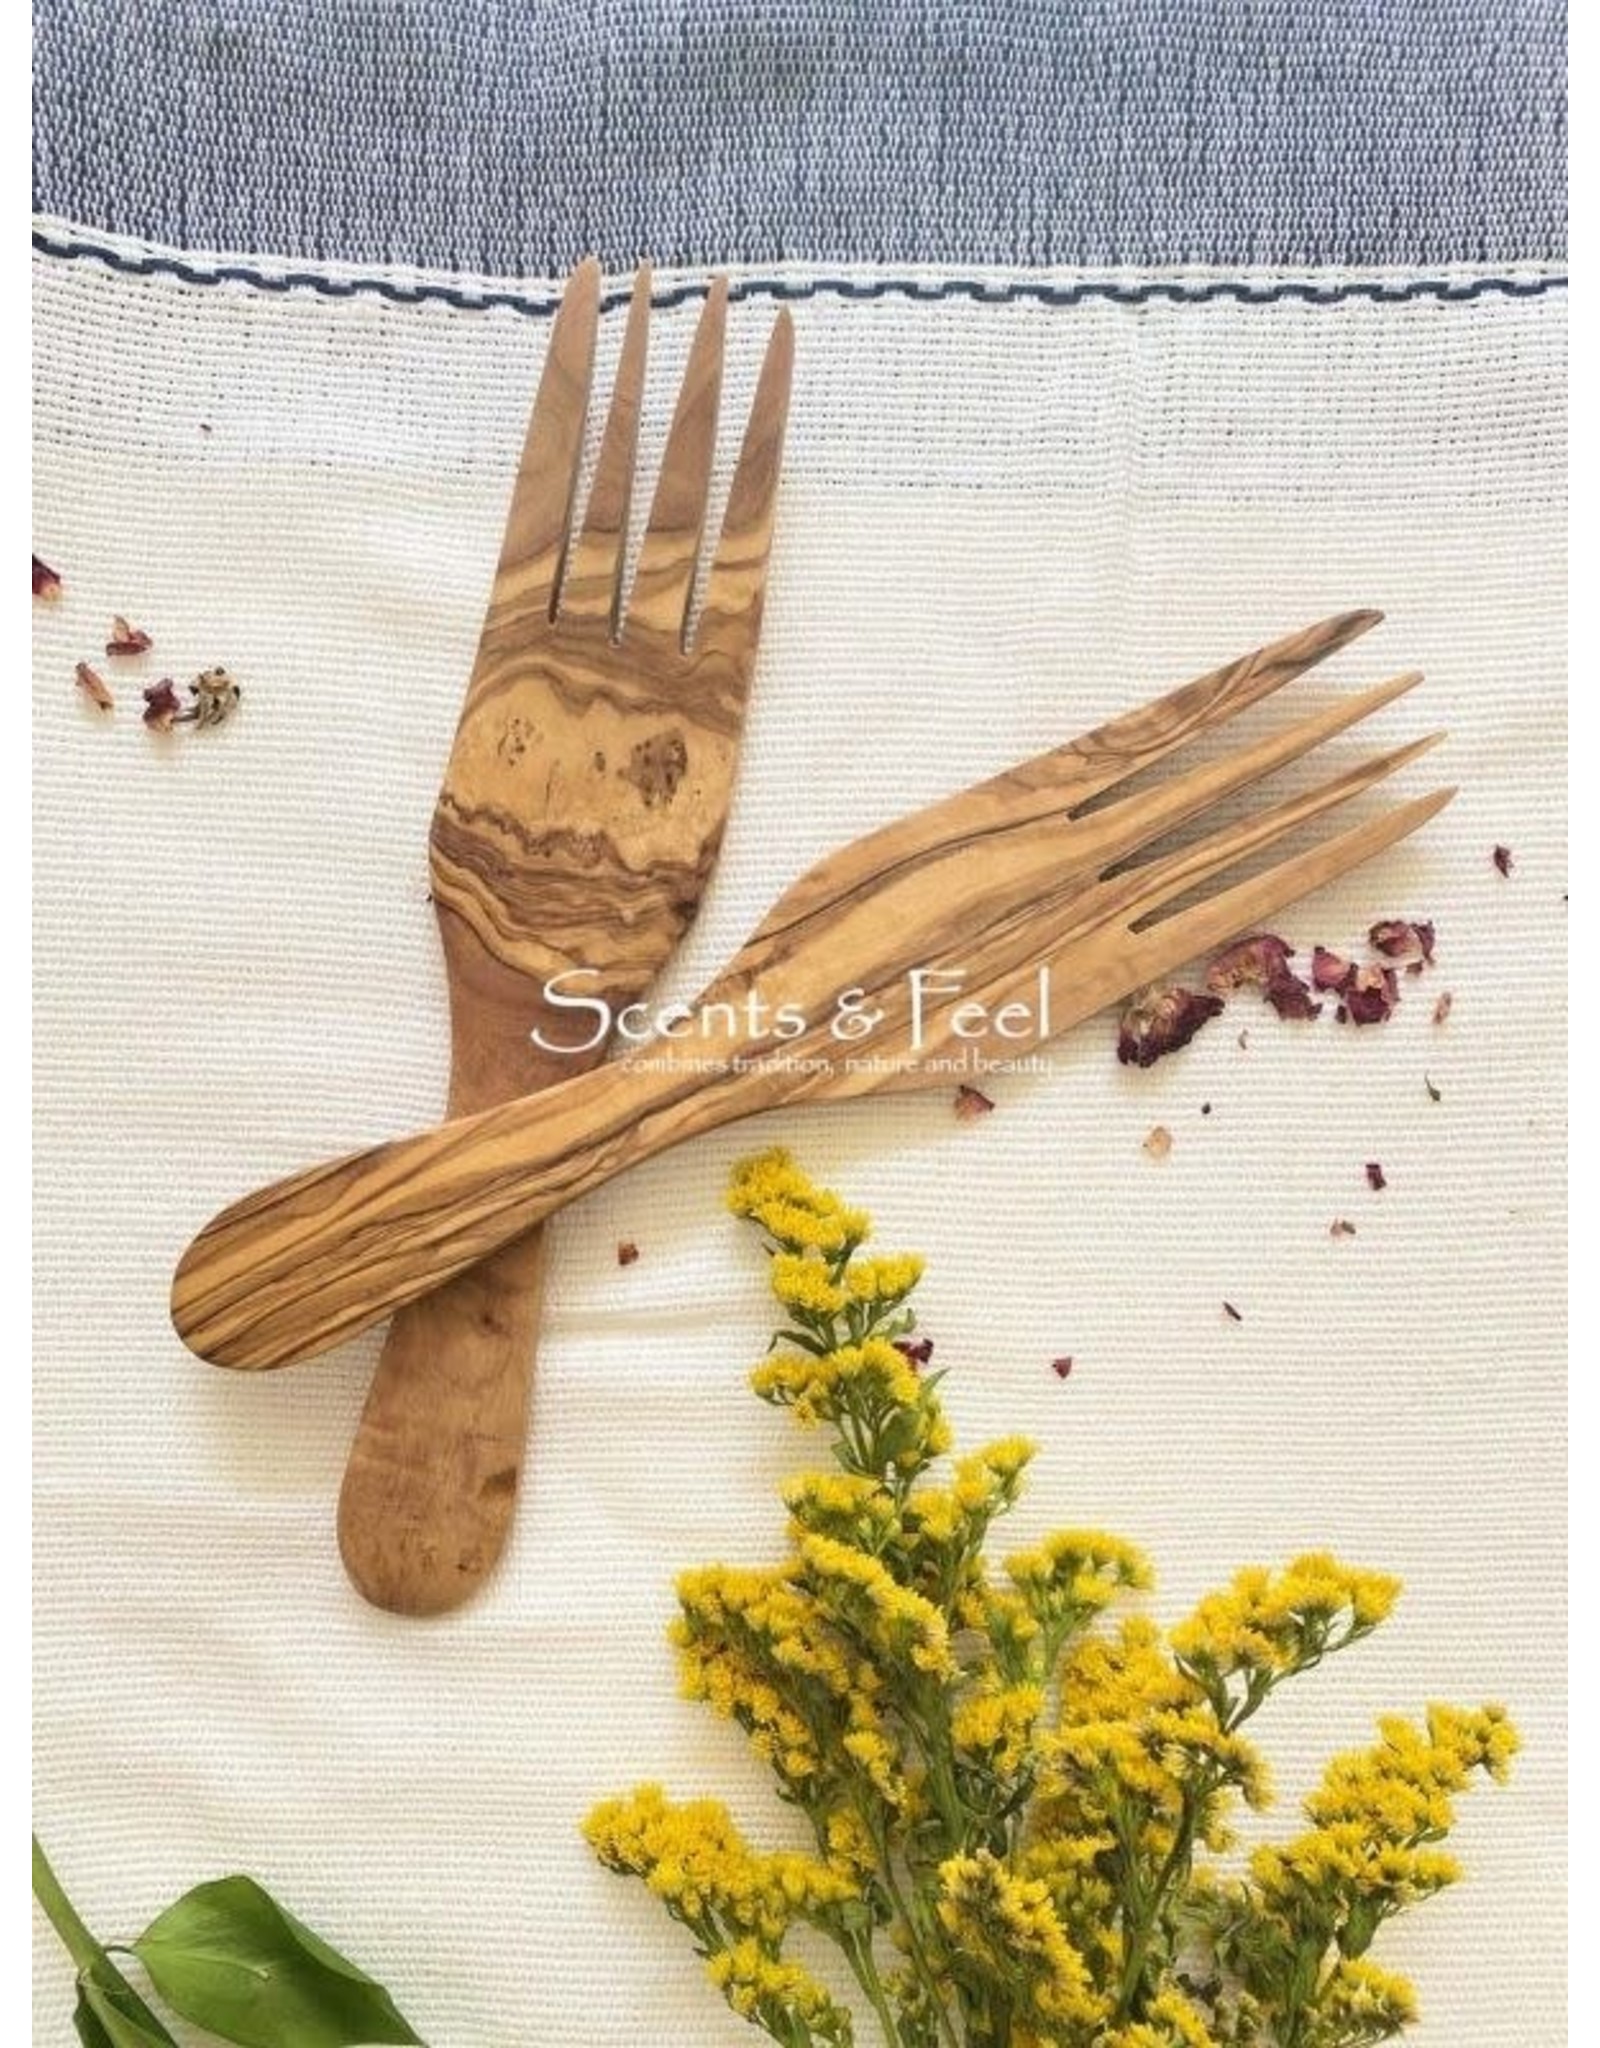 Olive Wood Modern Forks Salad Set